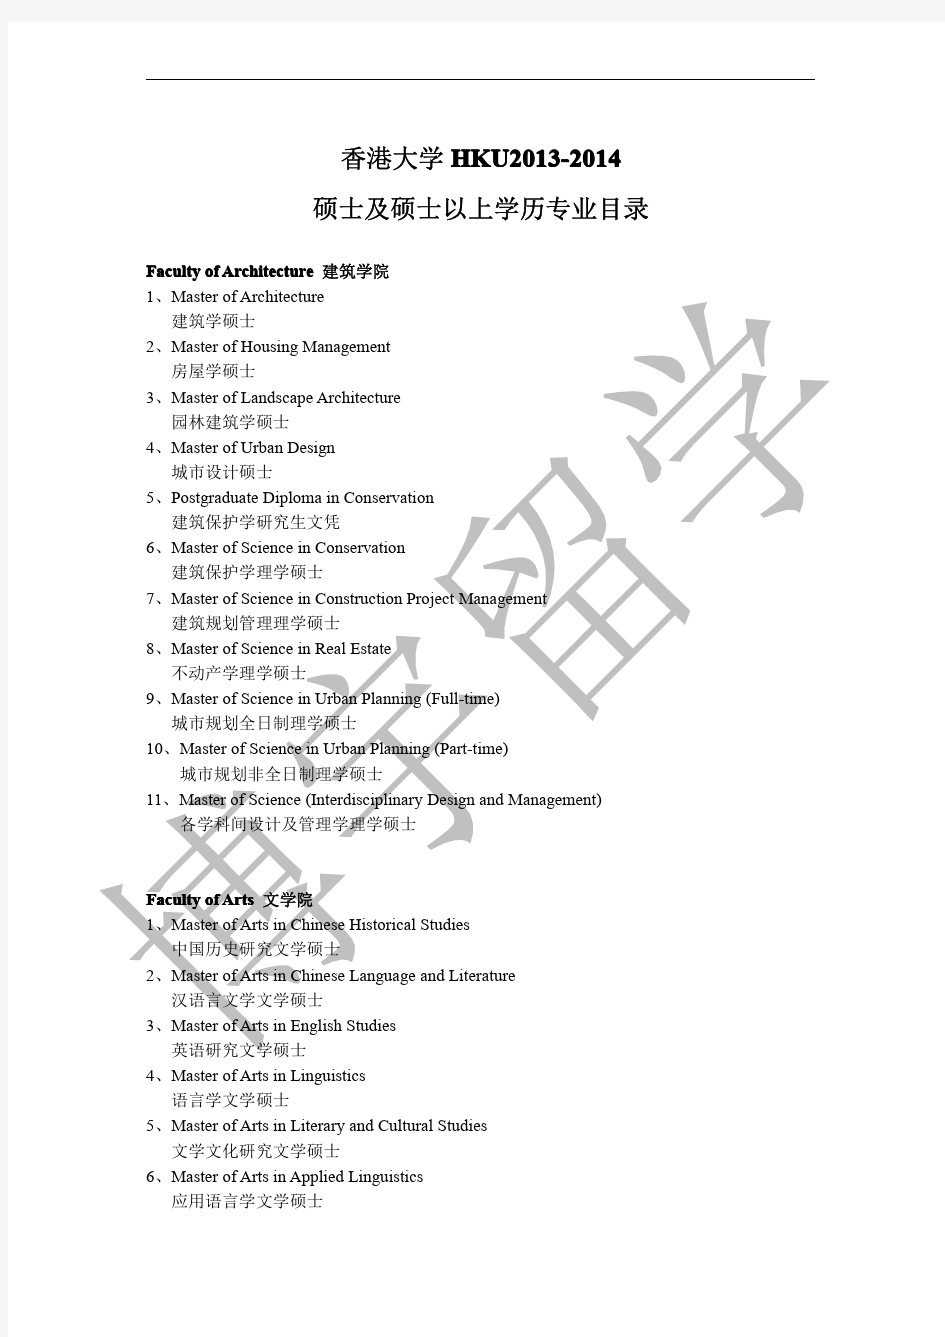 香港大学HKU2013-2014硕士及硕士以上学历专业目录(博宇留学整理)